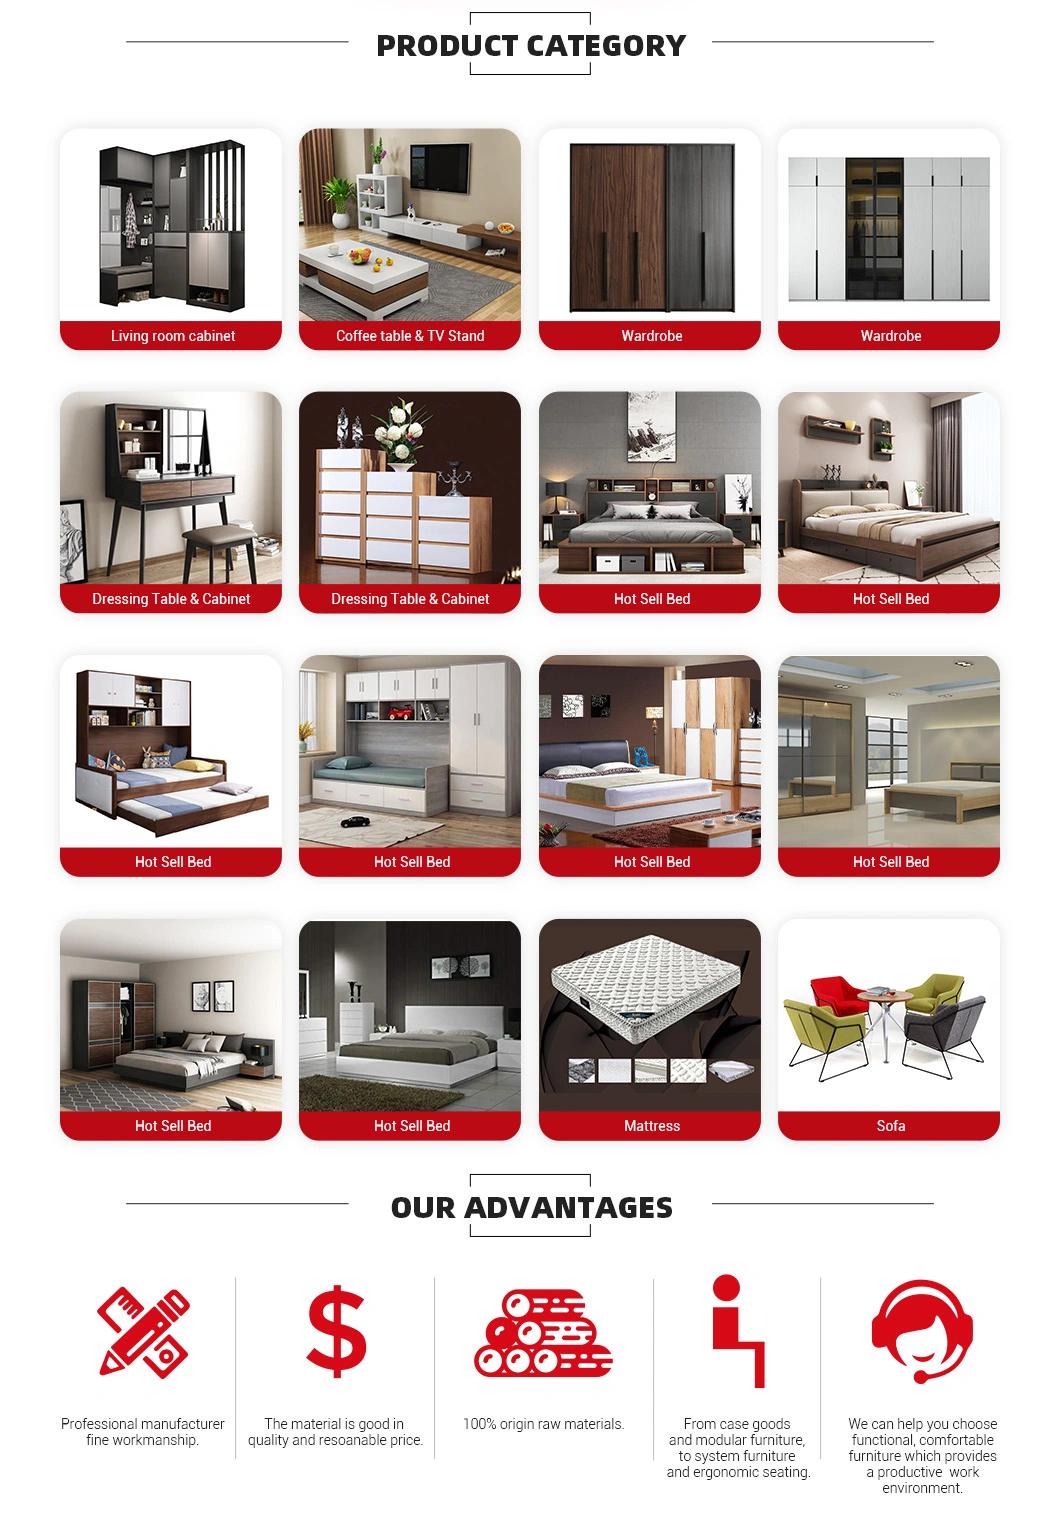 Luxury Modern King Beds Dresser Home Furniture Set for 5 Star Hotel Bedroom Bed